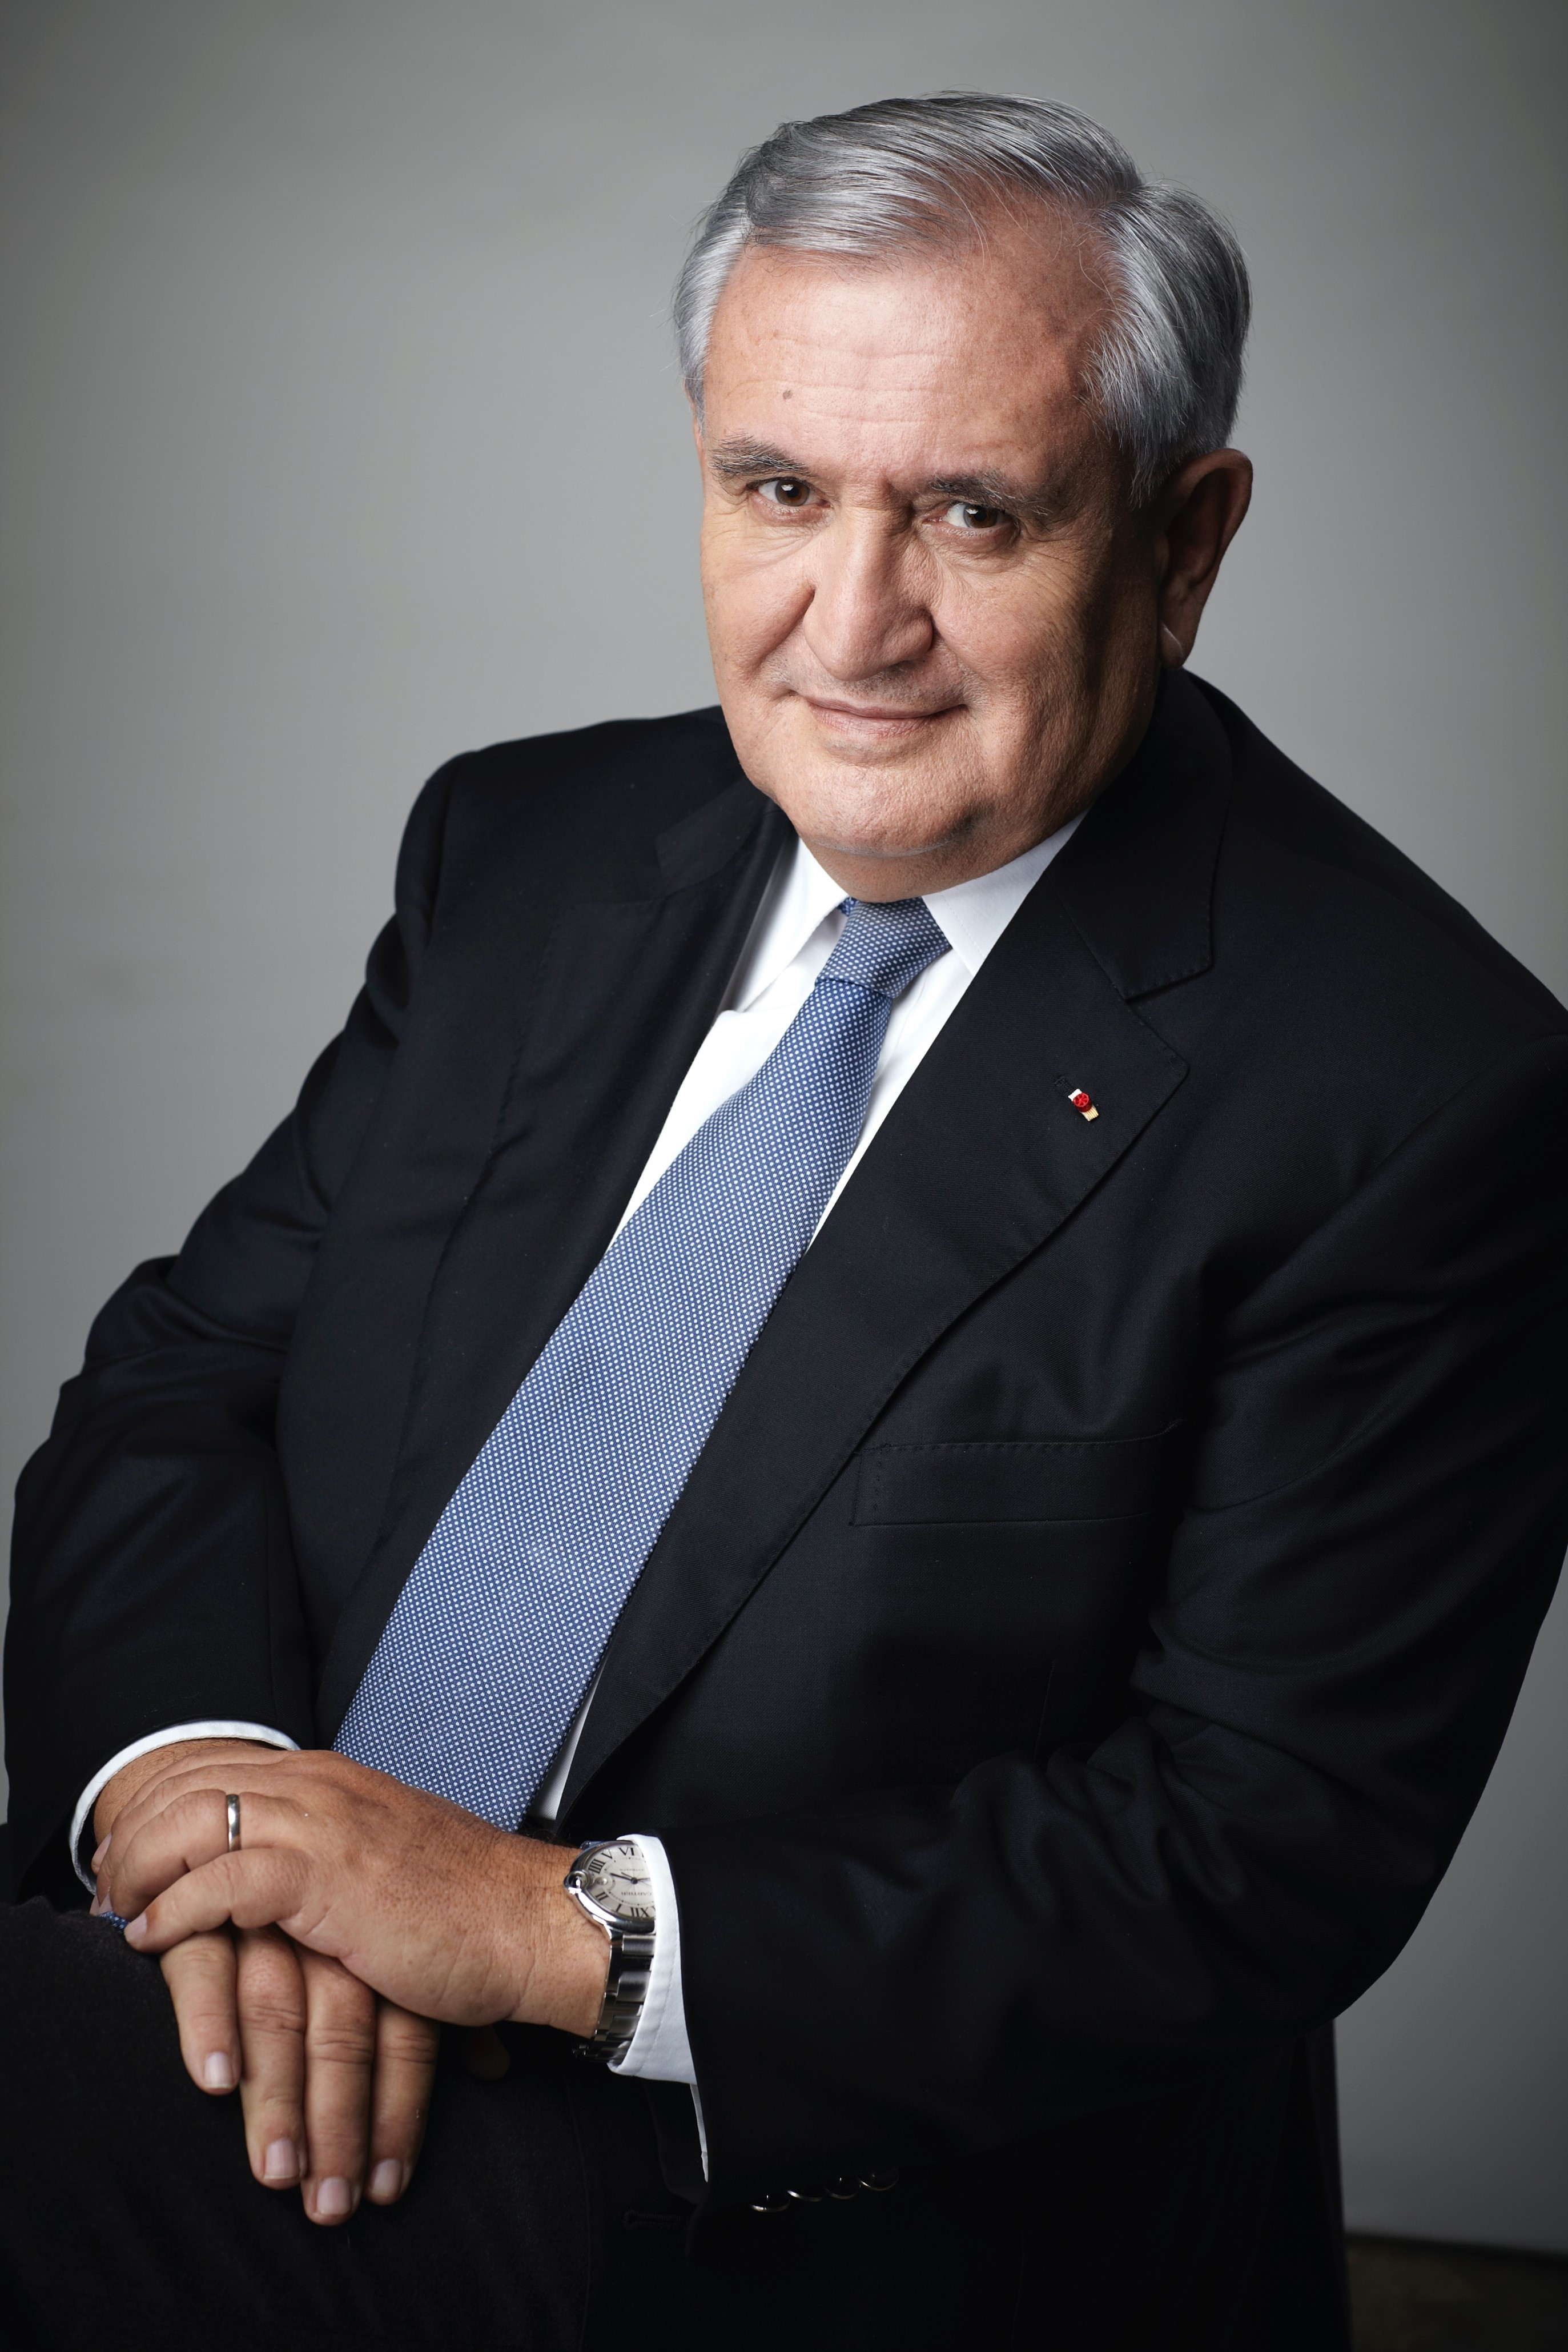 Jean-Pierre RAFFARIN